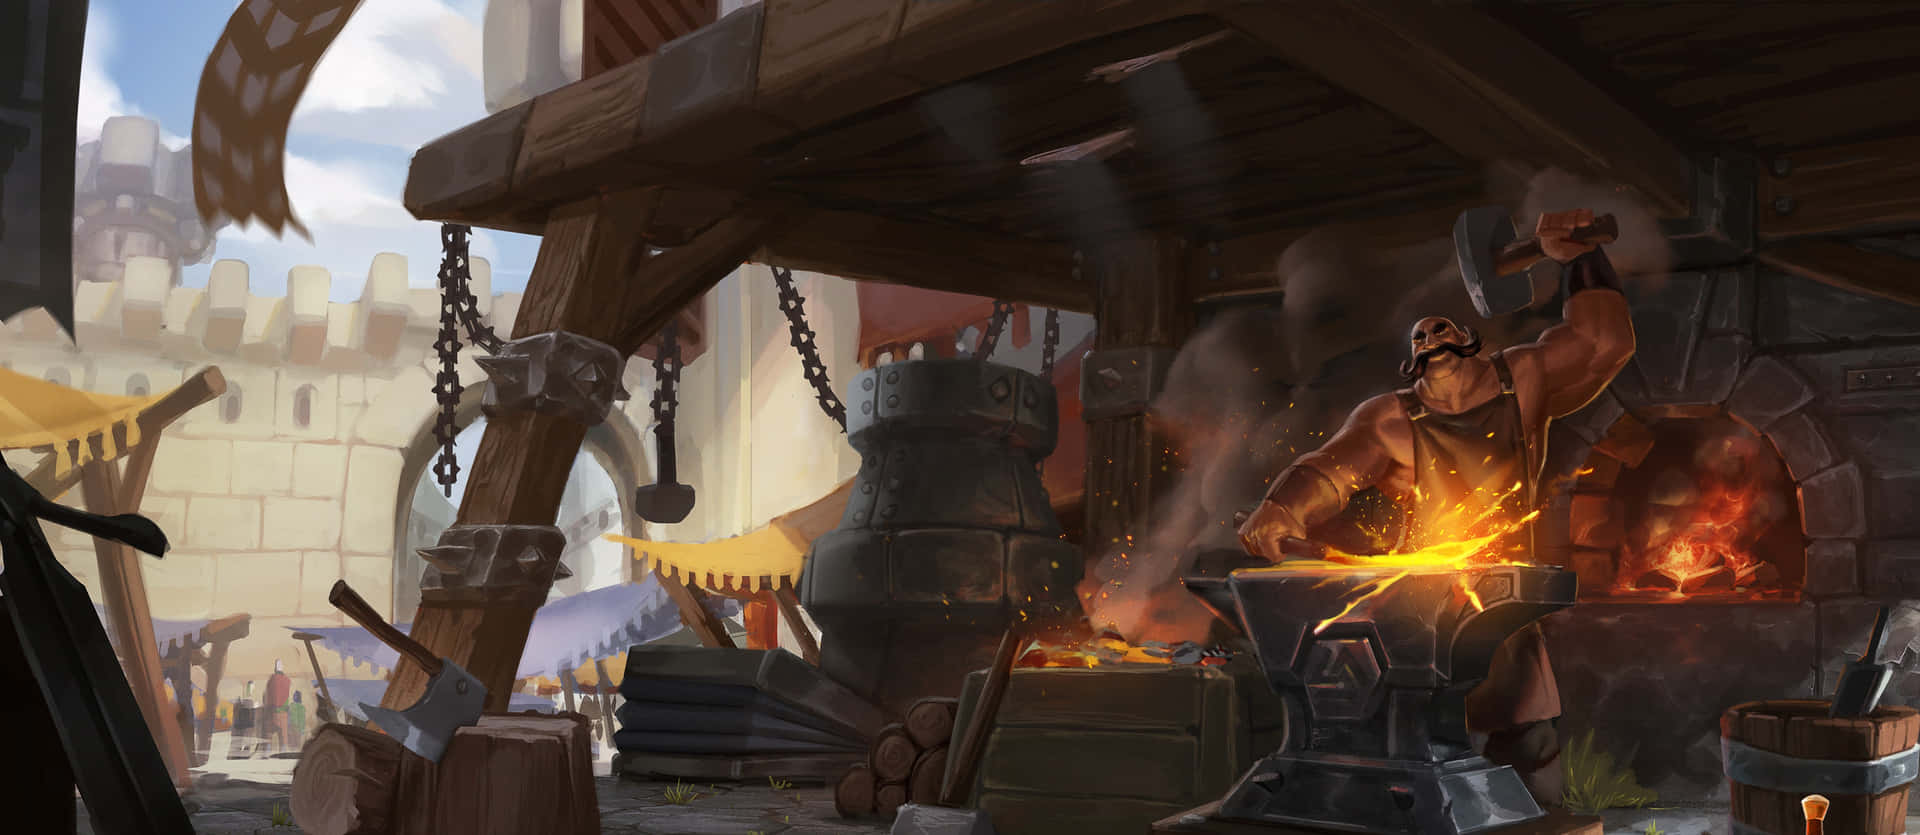 Master blacksmith hard at work at the forge. Wallpaper